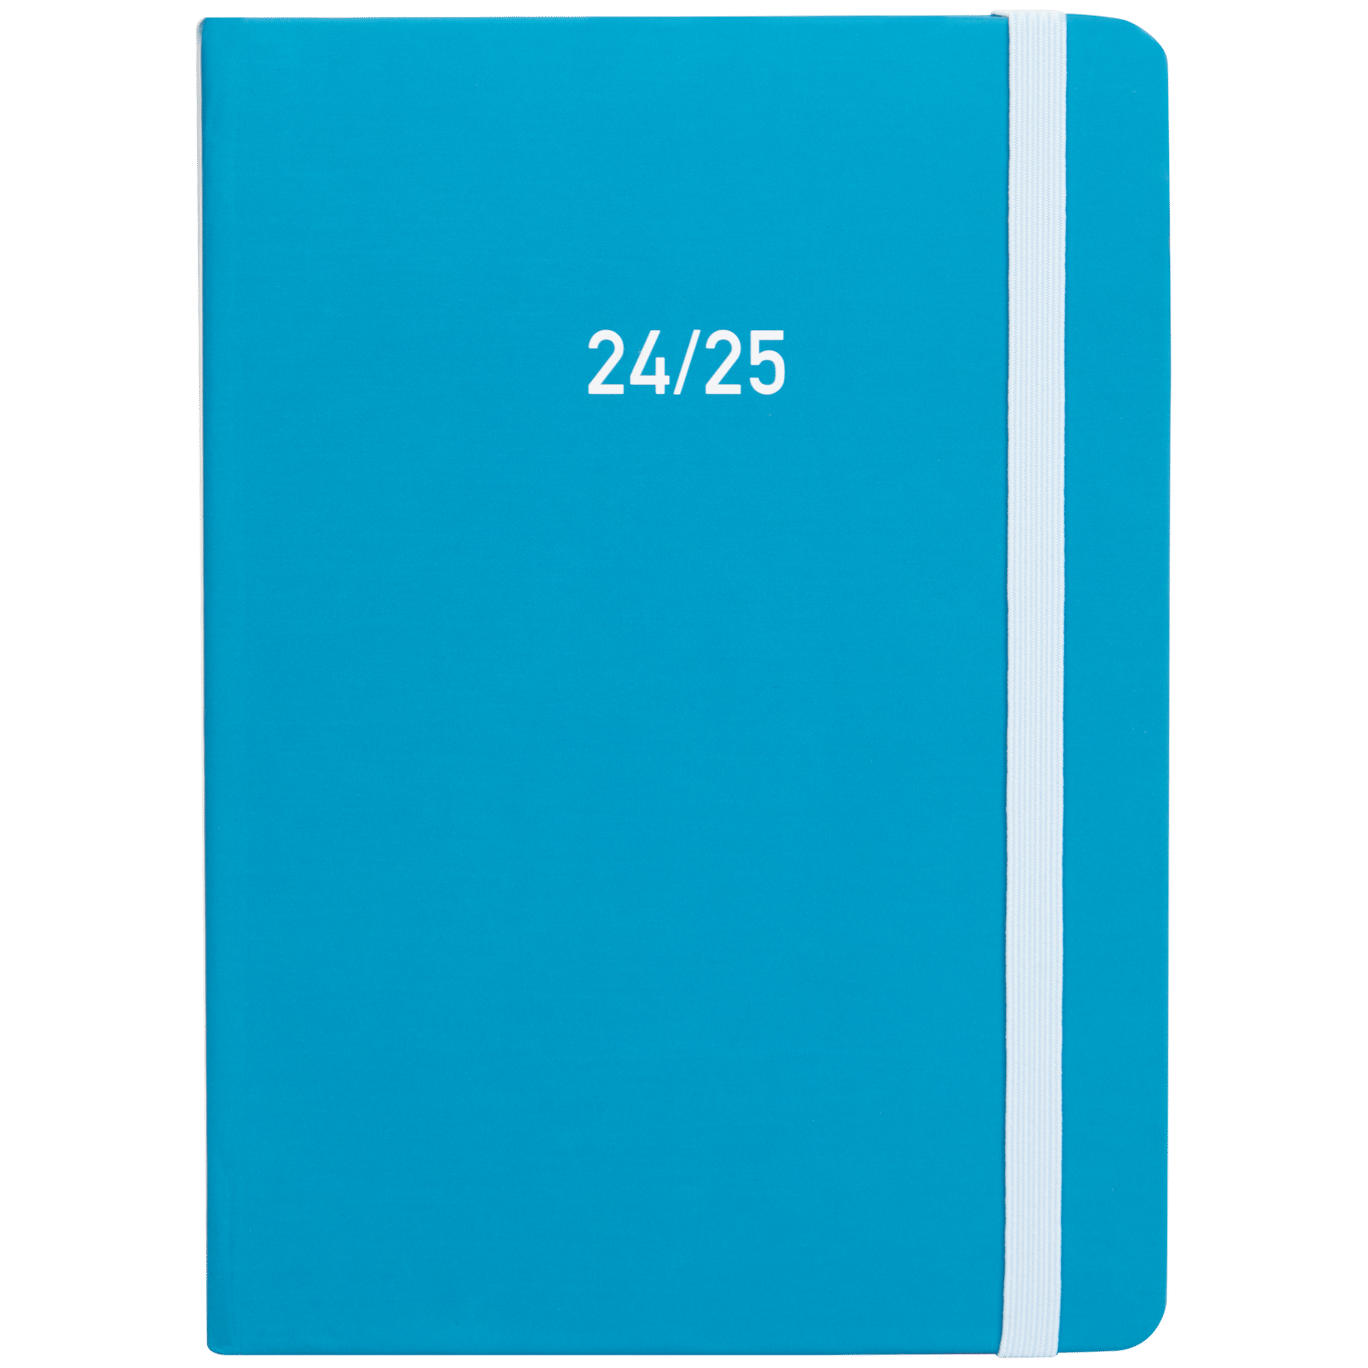 Agenda escolar 2024-2025